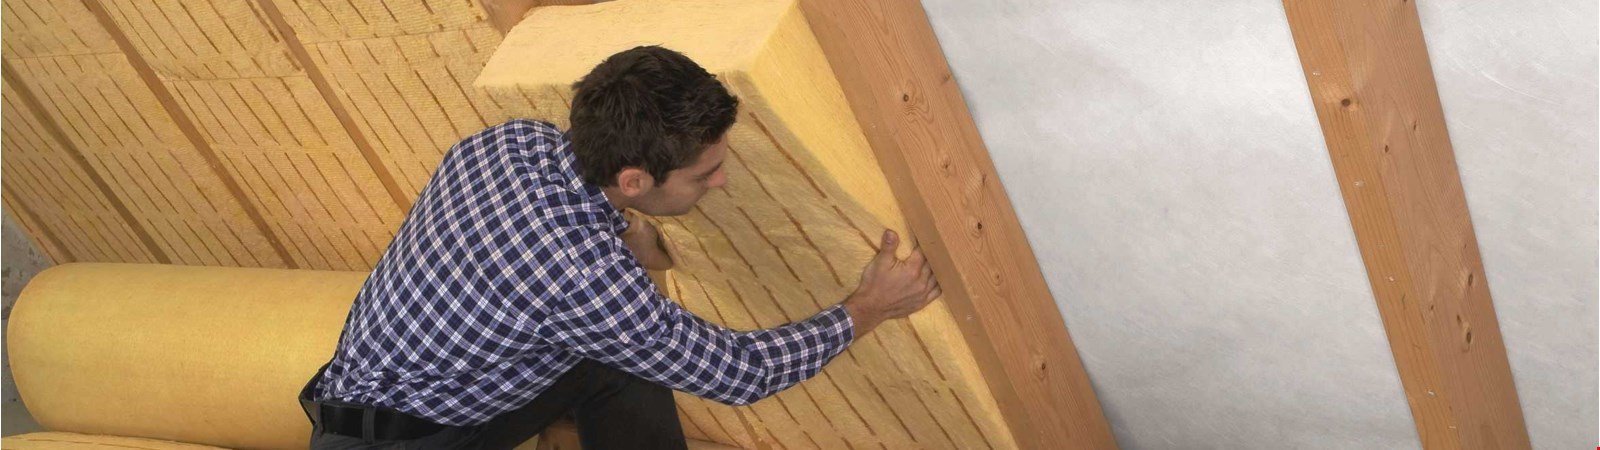 Investition Dachdämmung: Was kostet eine Dachsanierung?